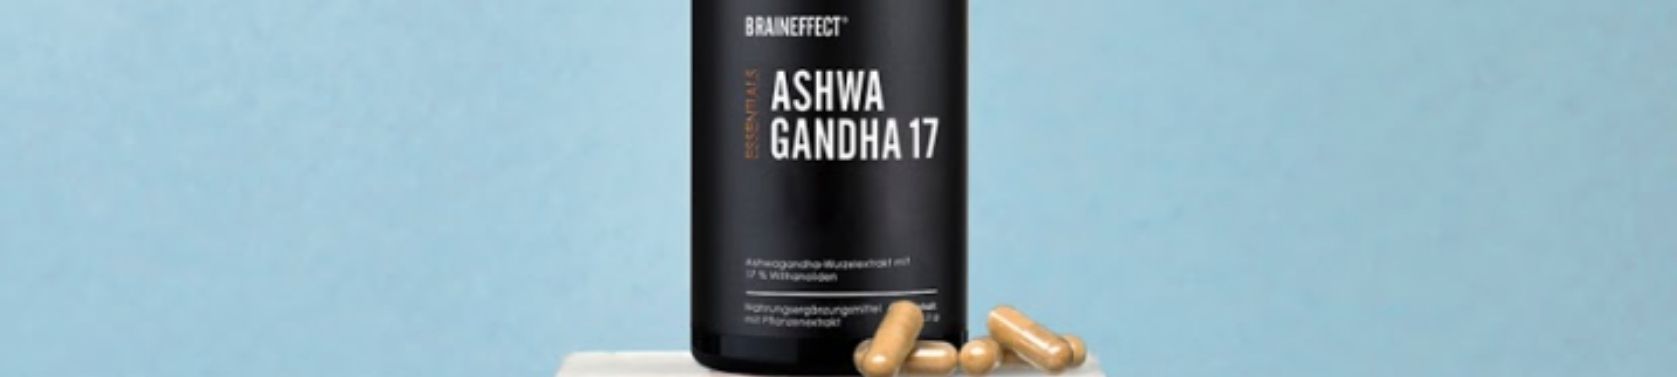 Ashwagandha - Die wichtigsten Facts zur Wirkung der Superpflanze